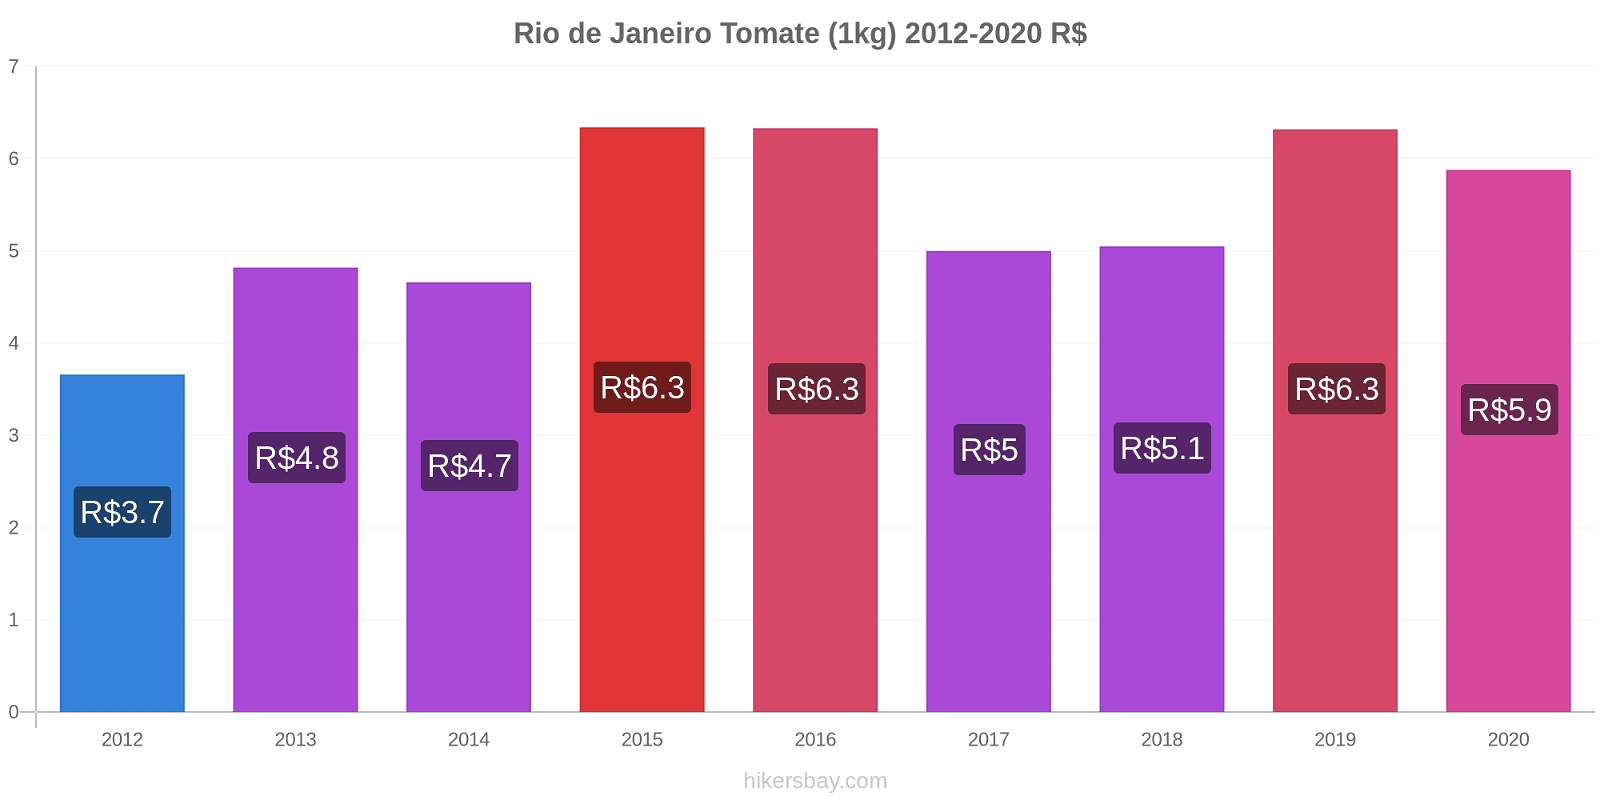 Rio de Janeiro variação de preço Tomate (1kg) hikersbay.com